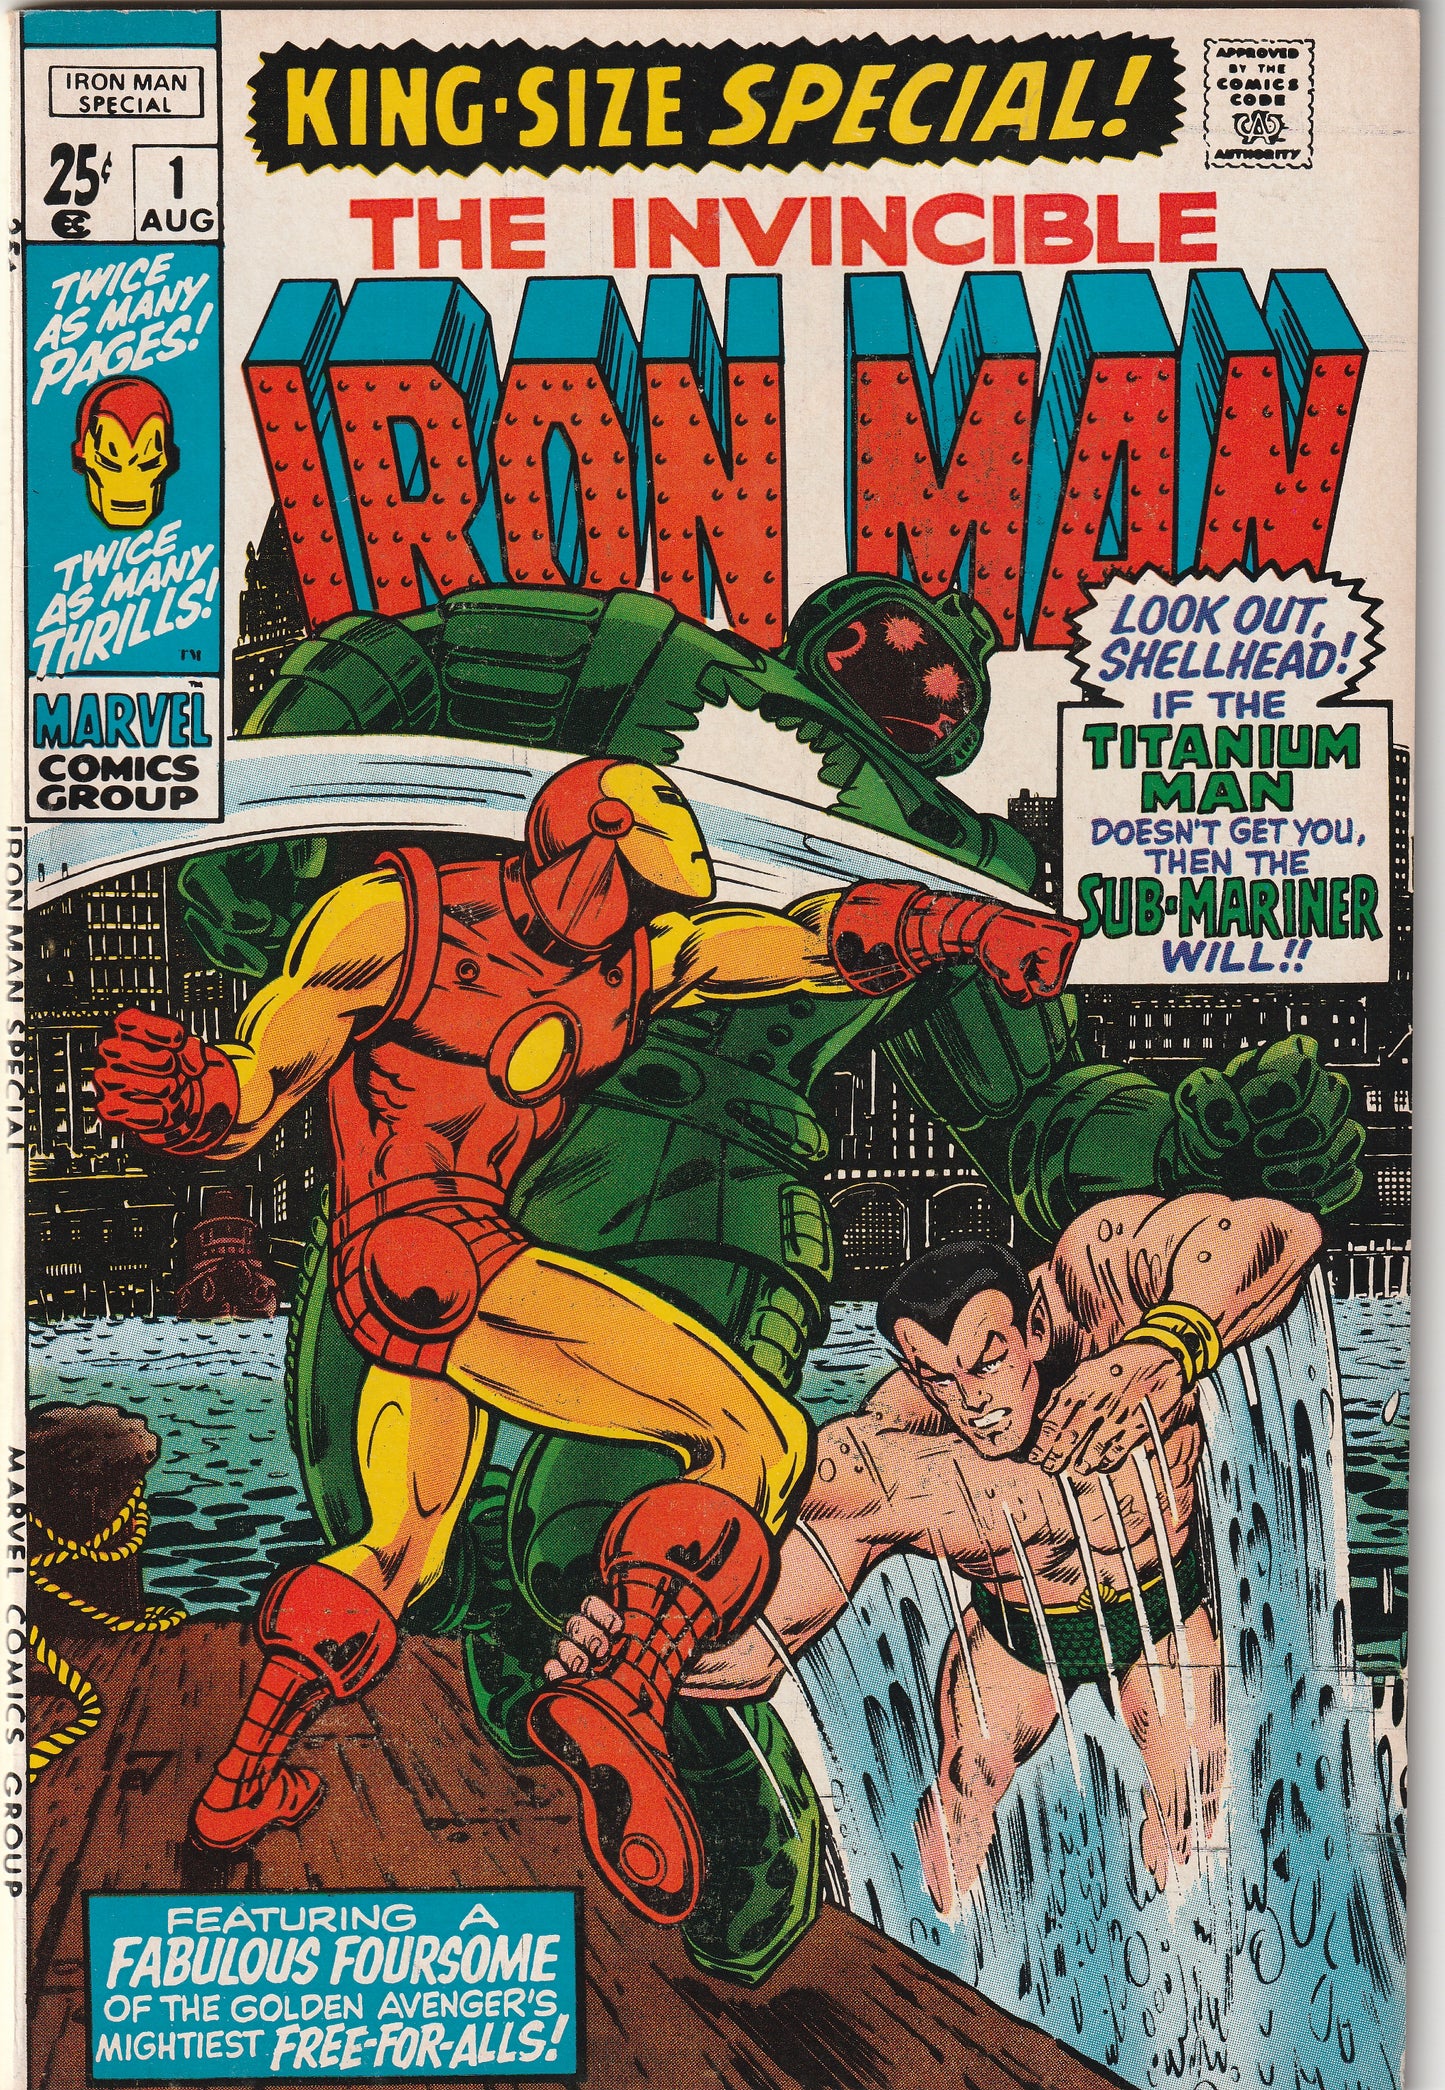 Iron Man Special #1 (1970) - Sub-Mariner crossover, Bill Everett cover